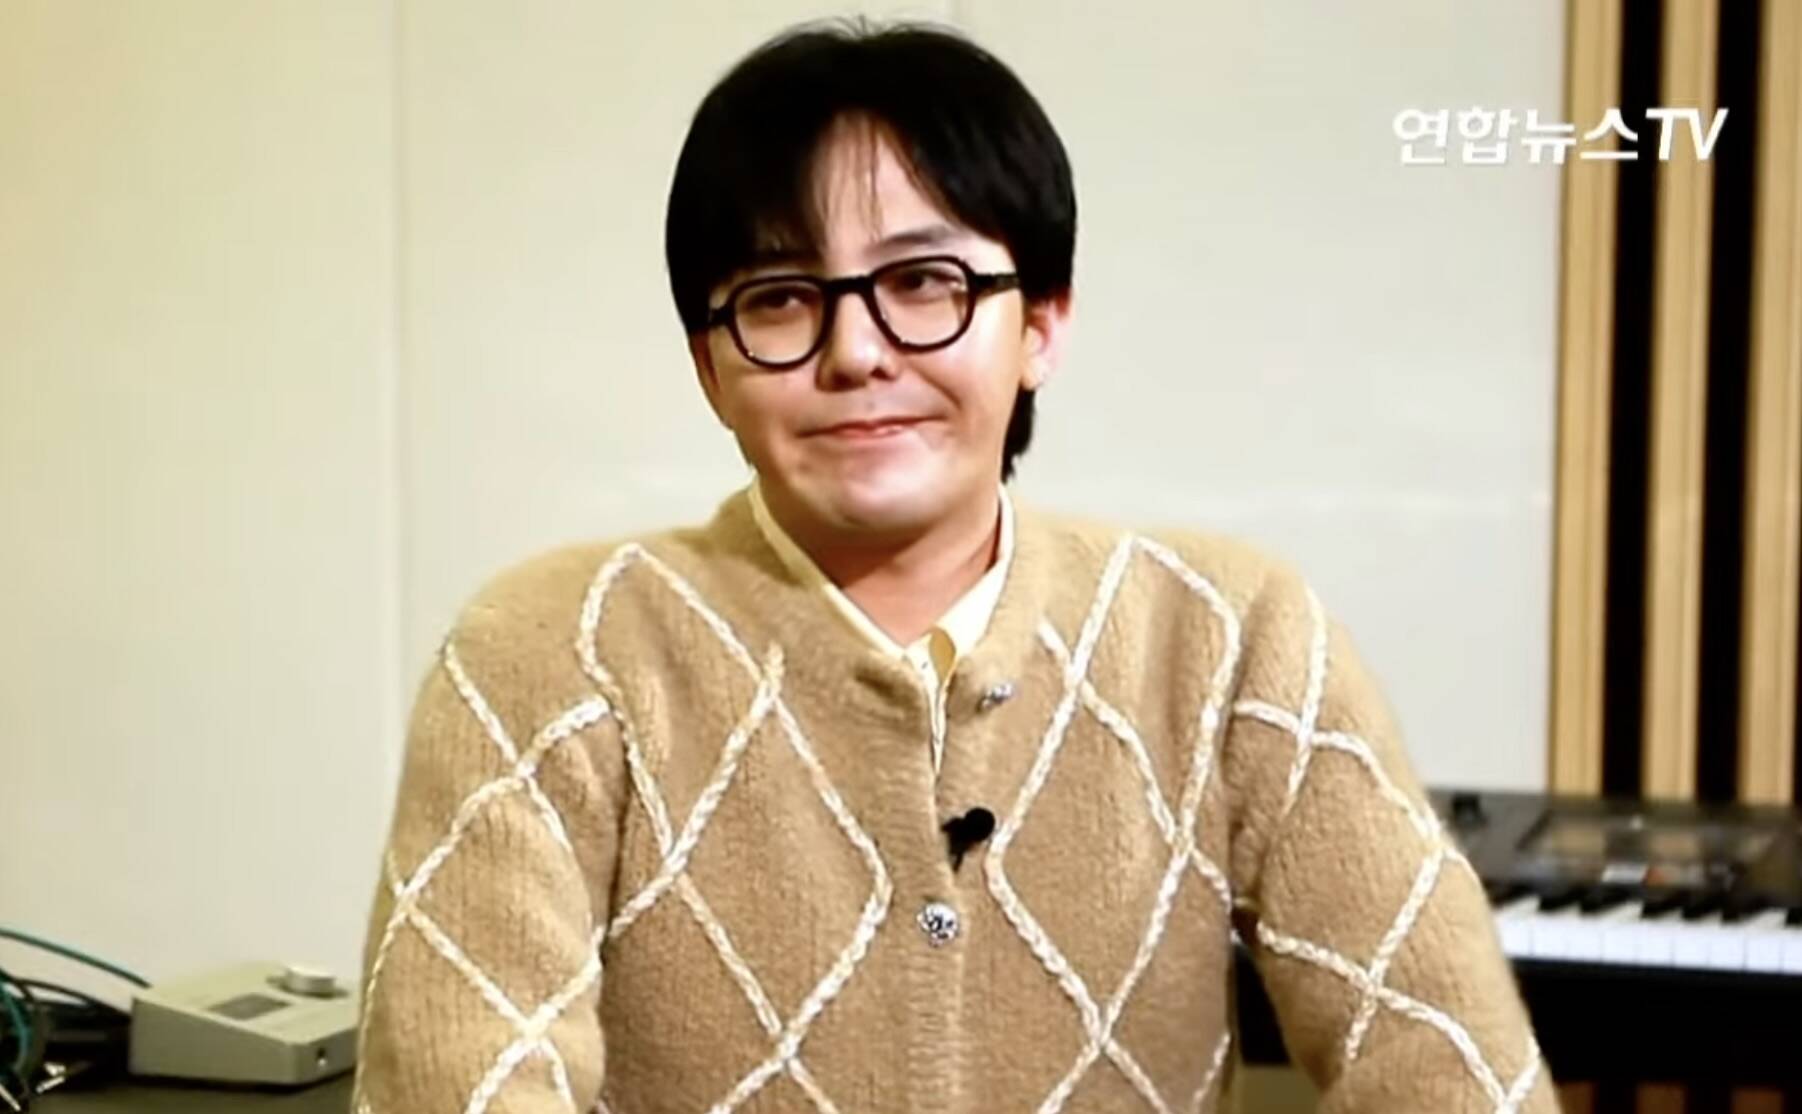 Thủ lĩnh Big Bang khẳng định “Tôi chưa bao giờ sử dụng ma tuý” trong các cuộc phỏng vấn. Ảnh: Naver